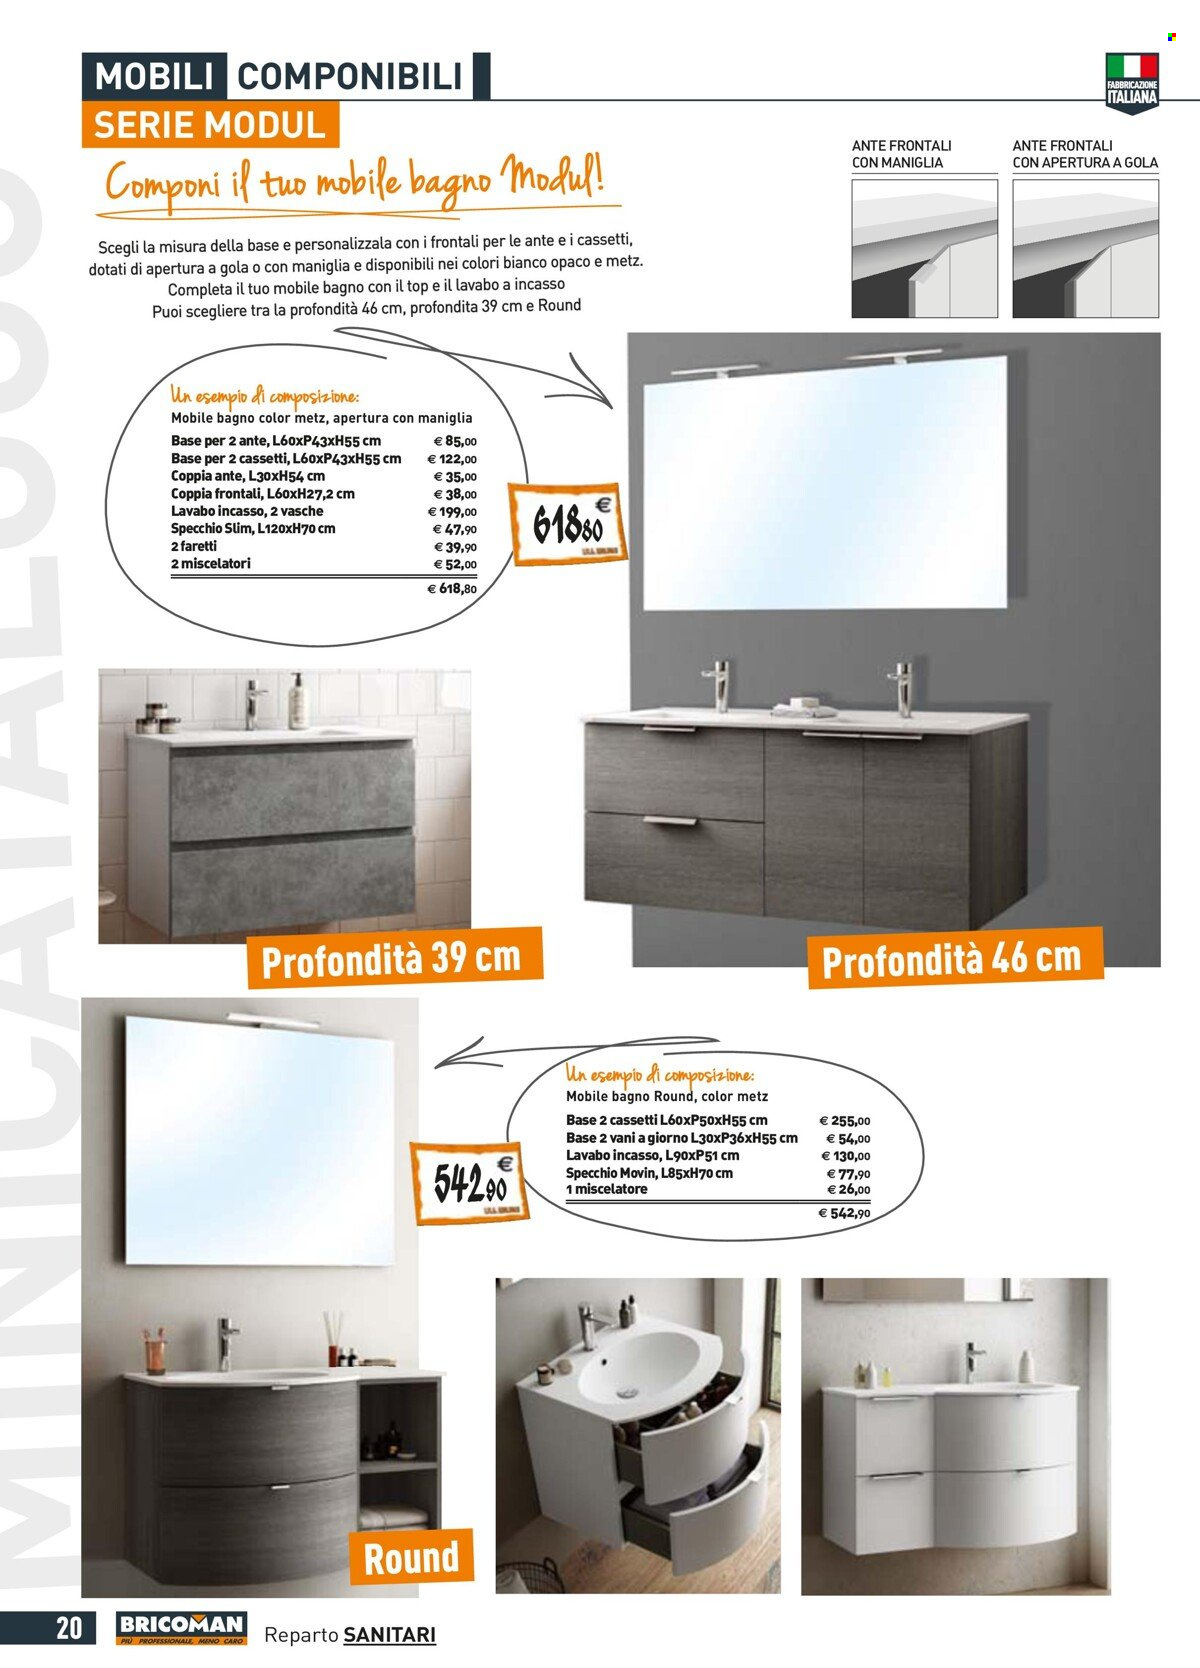 thumbnail - Volantino Tecnomat by Bricoman - 30/9/2021 - 27/10/2021 - Prodotti in offerta - lavabo, miscelatore, mobile bagno, maniglia. Pagina 20.